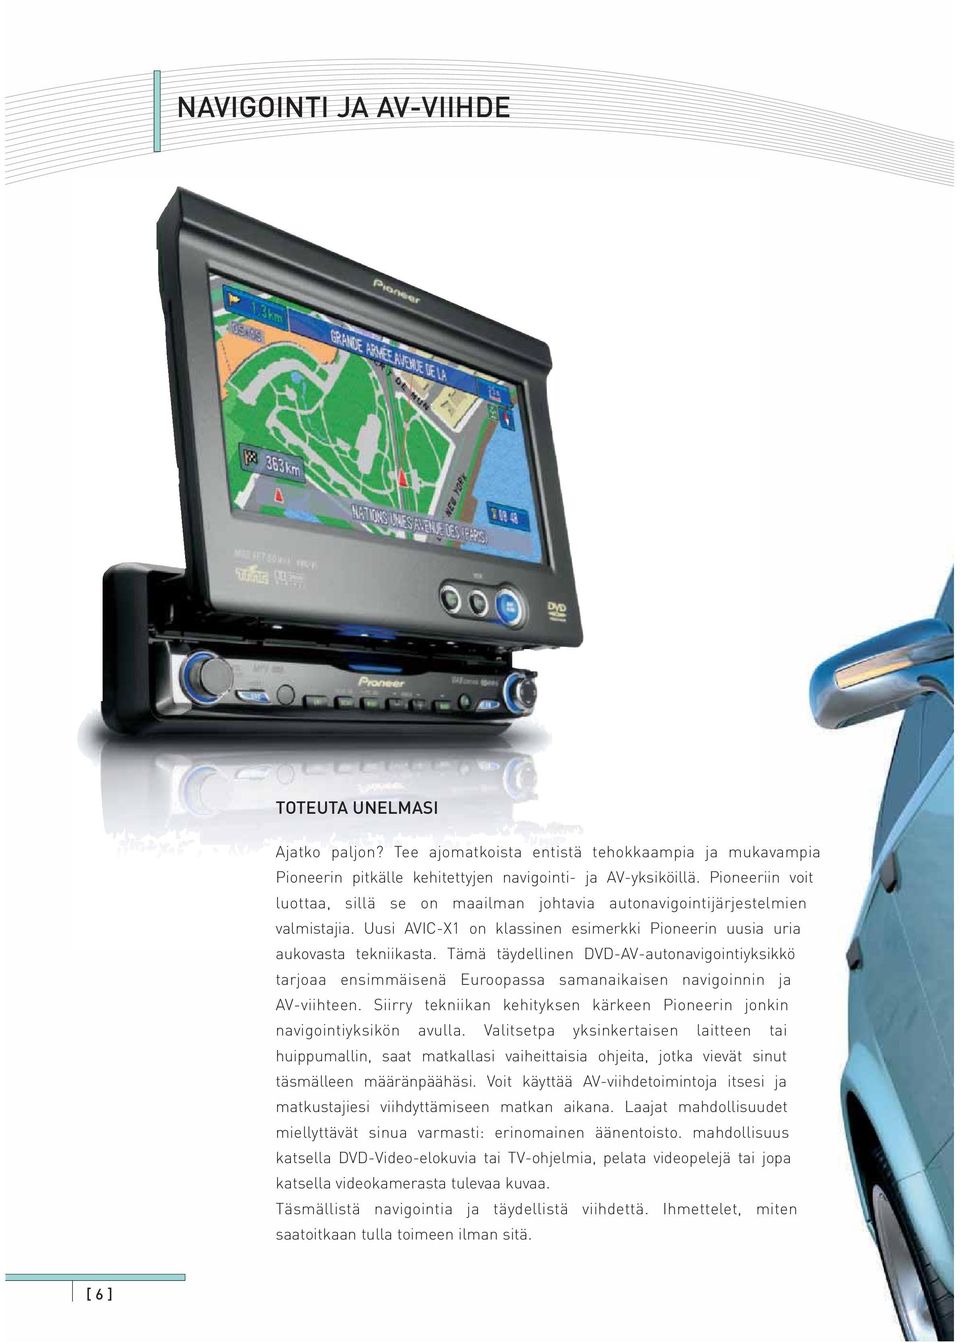 Tämä täydellinen DVD-AV-autonavigointiyksikkö tarjoaa ensimmäisenä Euroopassa samanaikaisen navigoinnin ja AV-viihteen. Siirry tekniikan kehityksen kärkeen Pioneerin jonkin navigointiyksikön avulla.